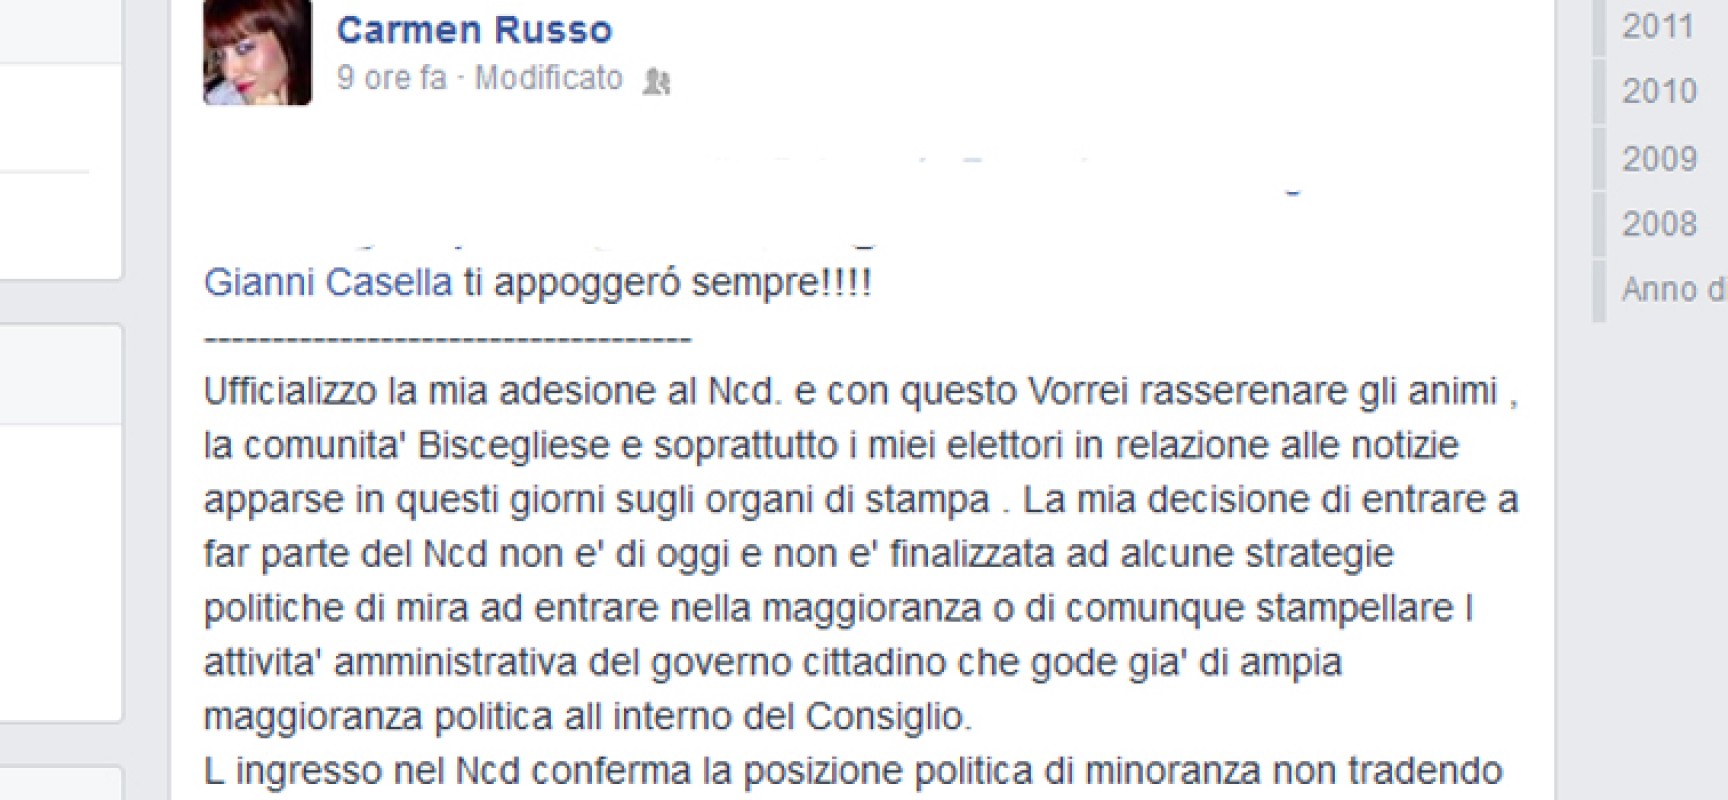 Carmen Russo: “Entro in Ncd ma in consiglio no”, Alfonso Russo: “Ma per cortesia”